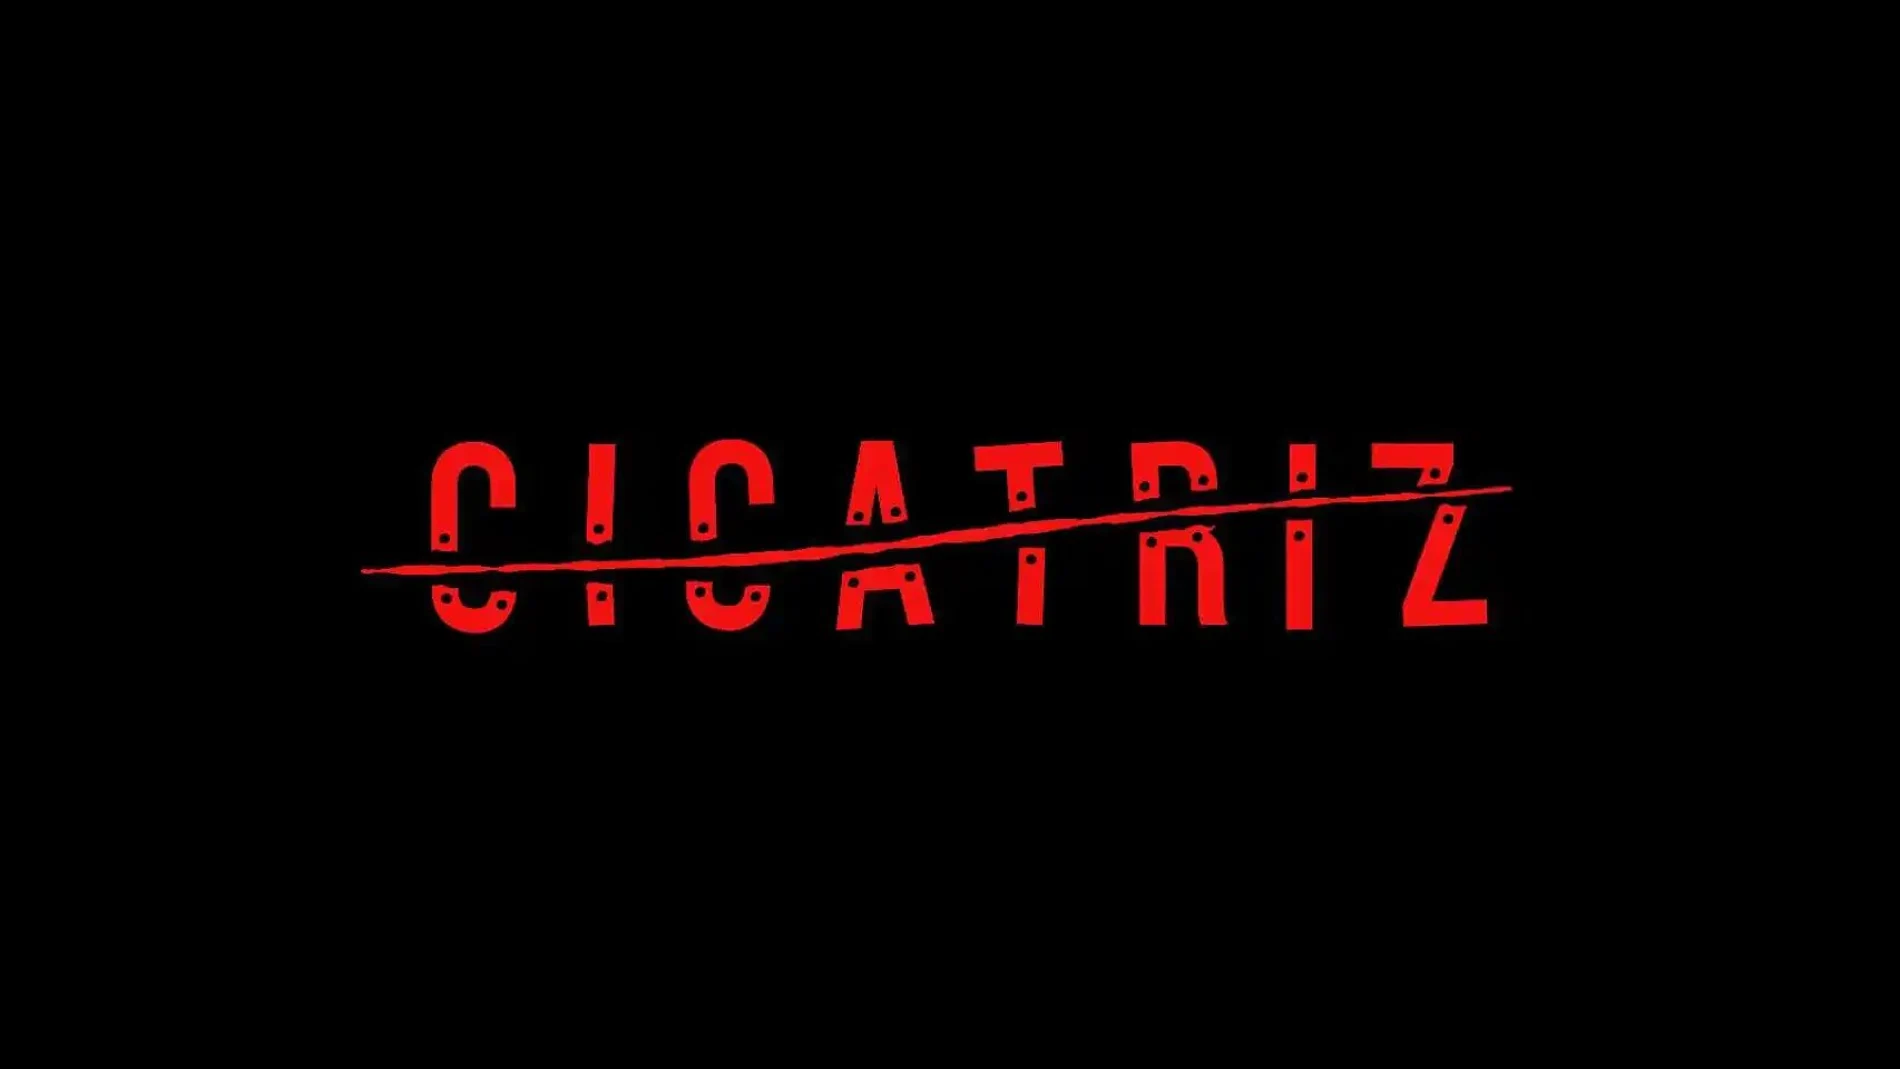 Cicatriz, la ultima novela de Juan Gómez-Jurado.